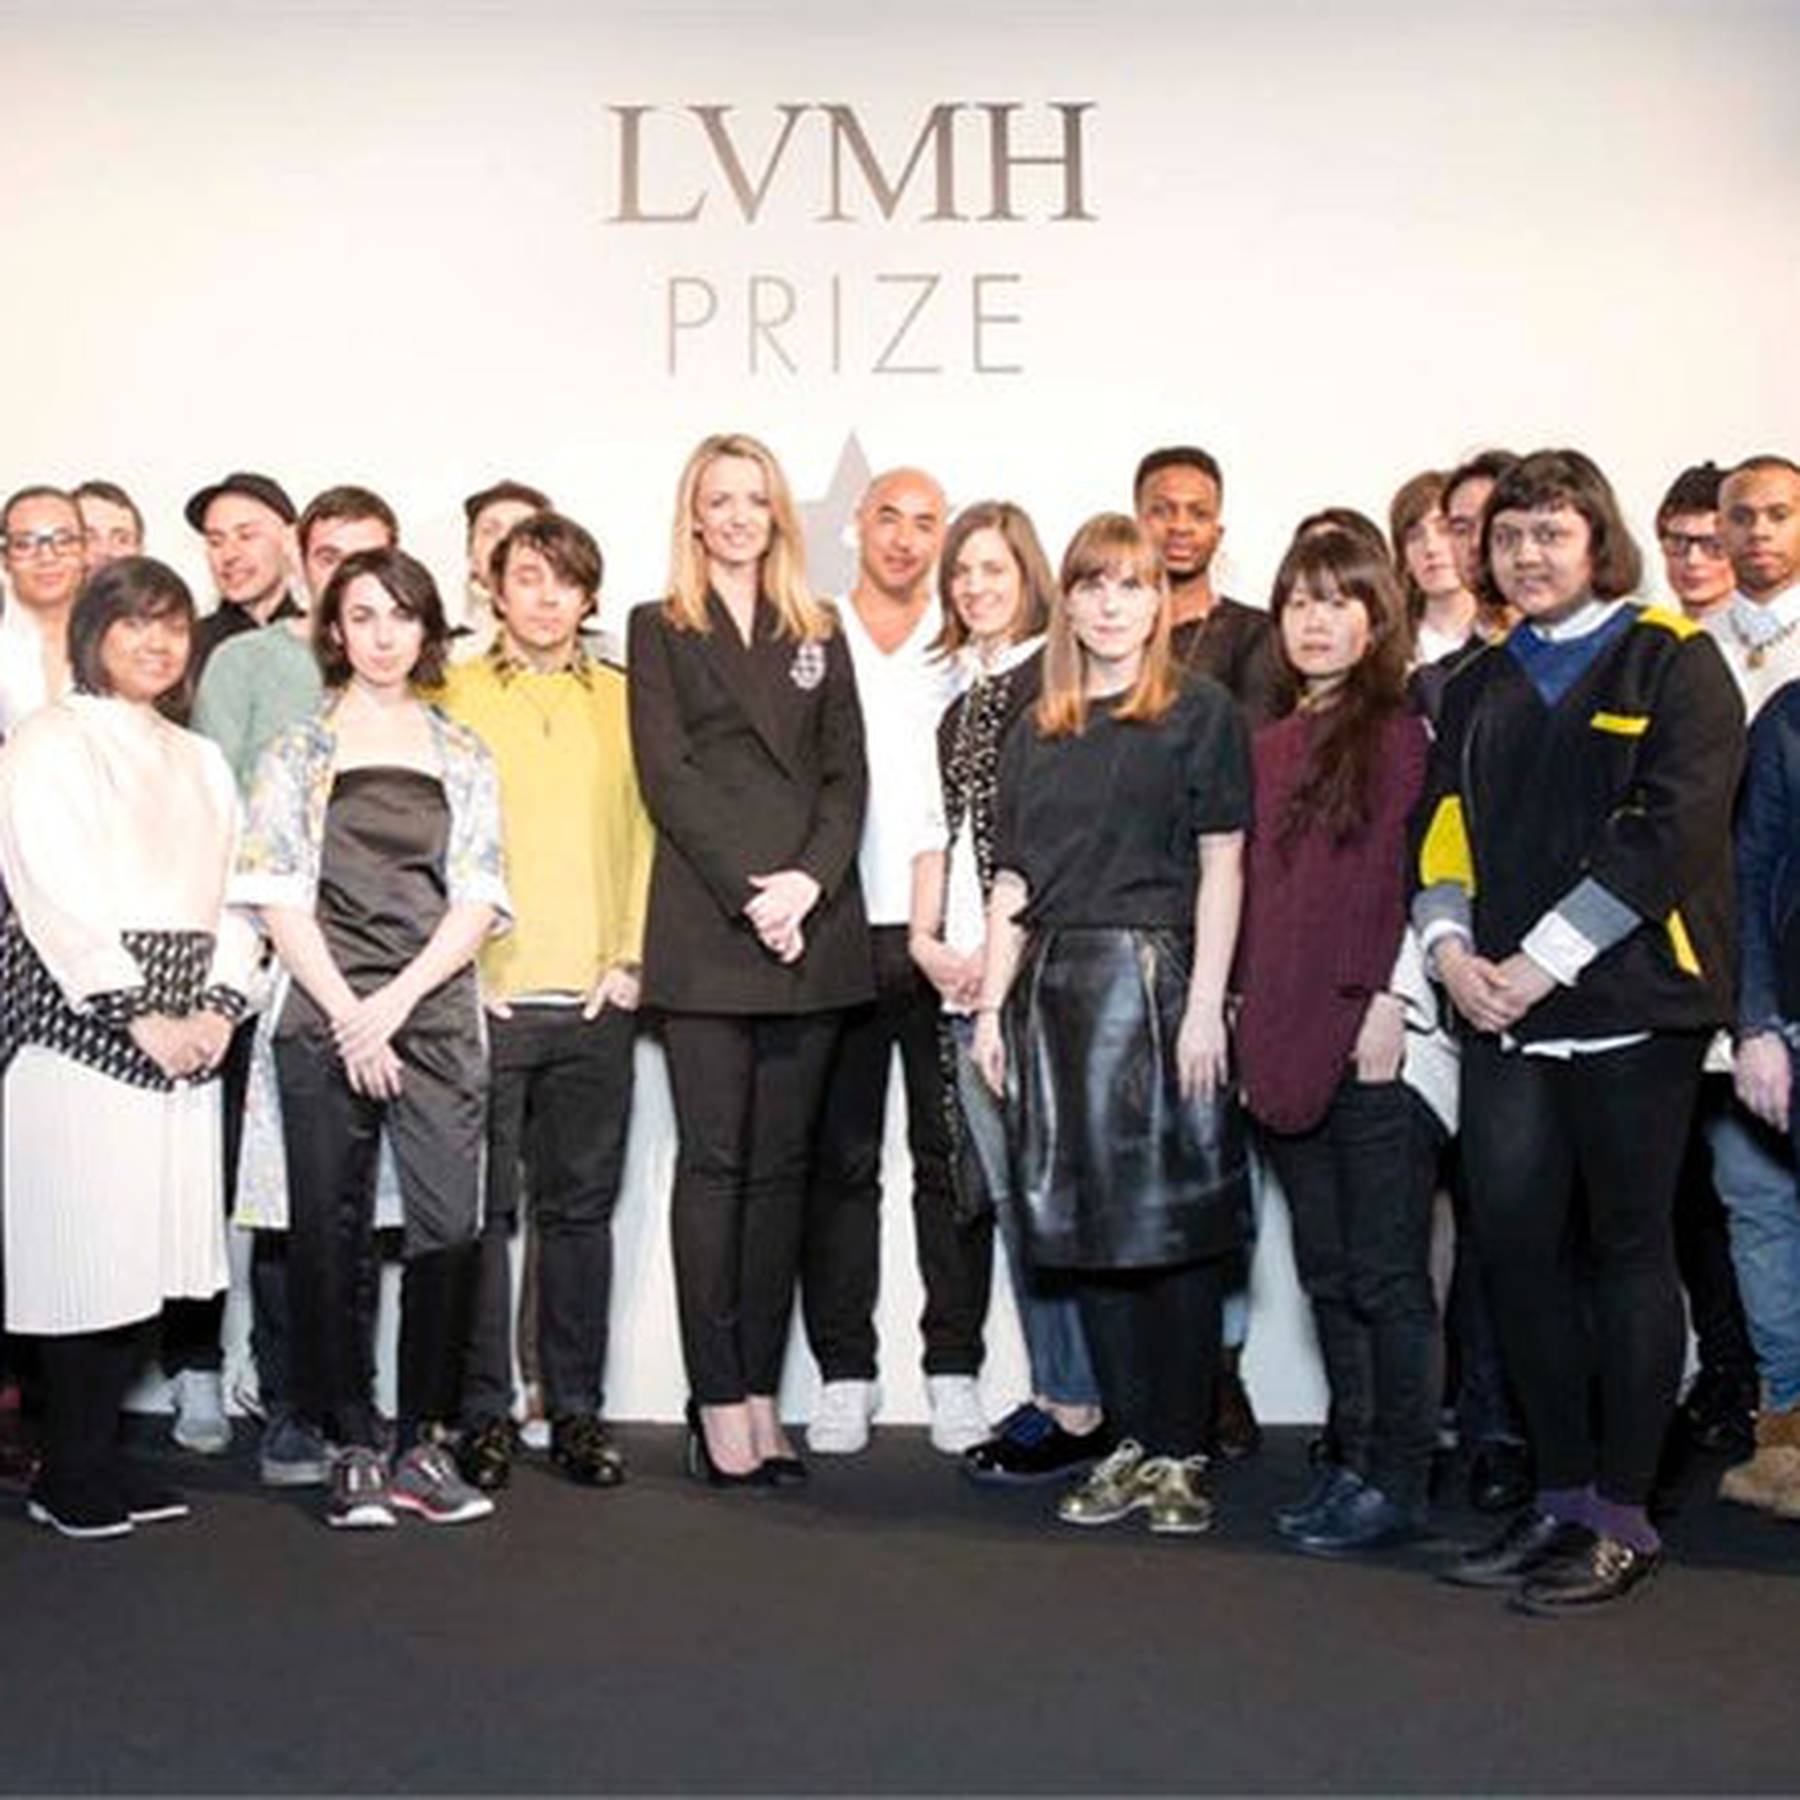 LVMH Prize winner announced